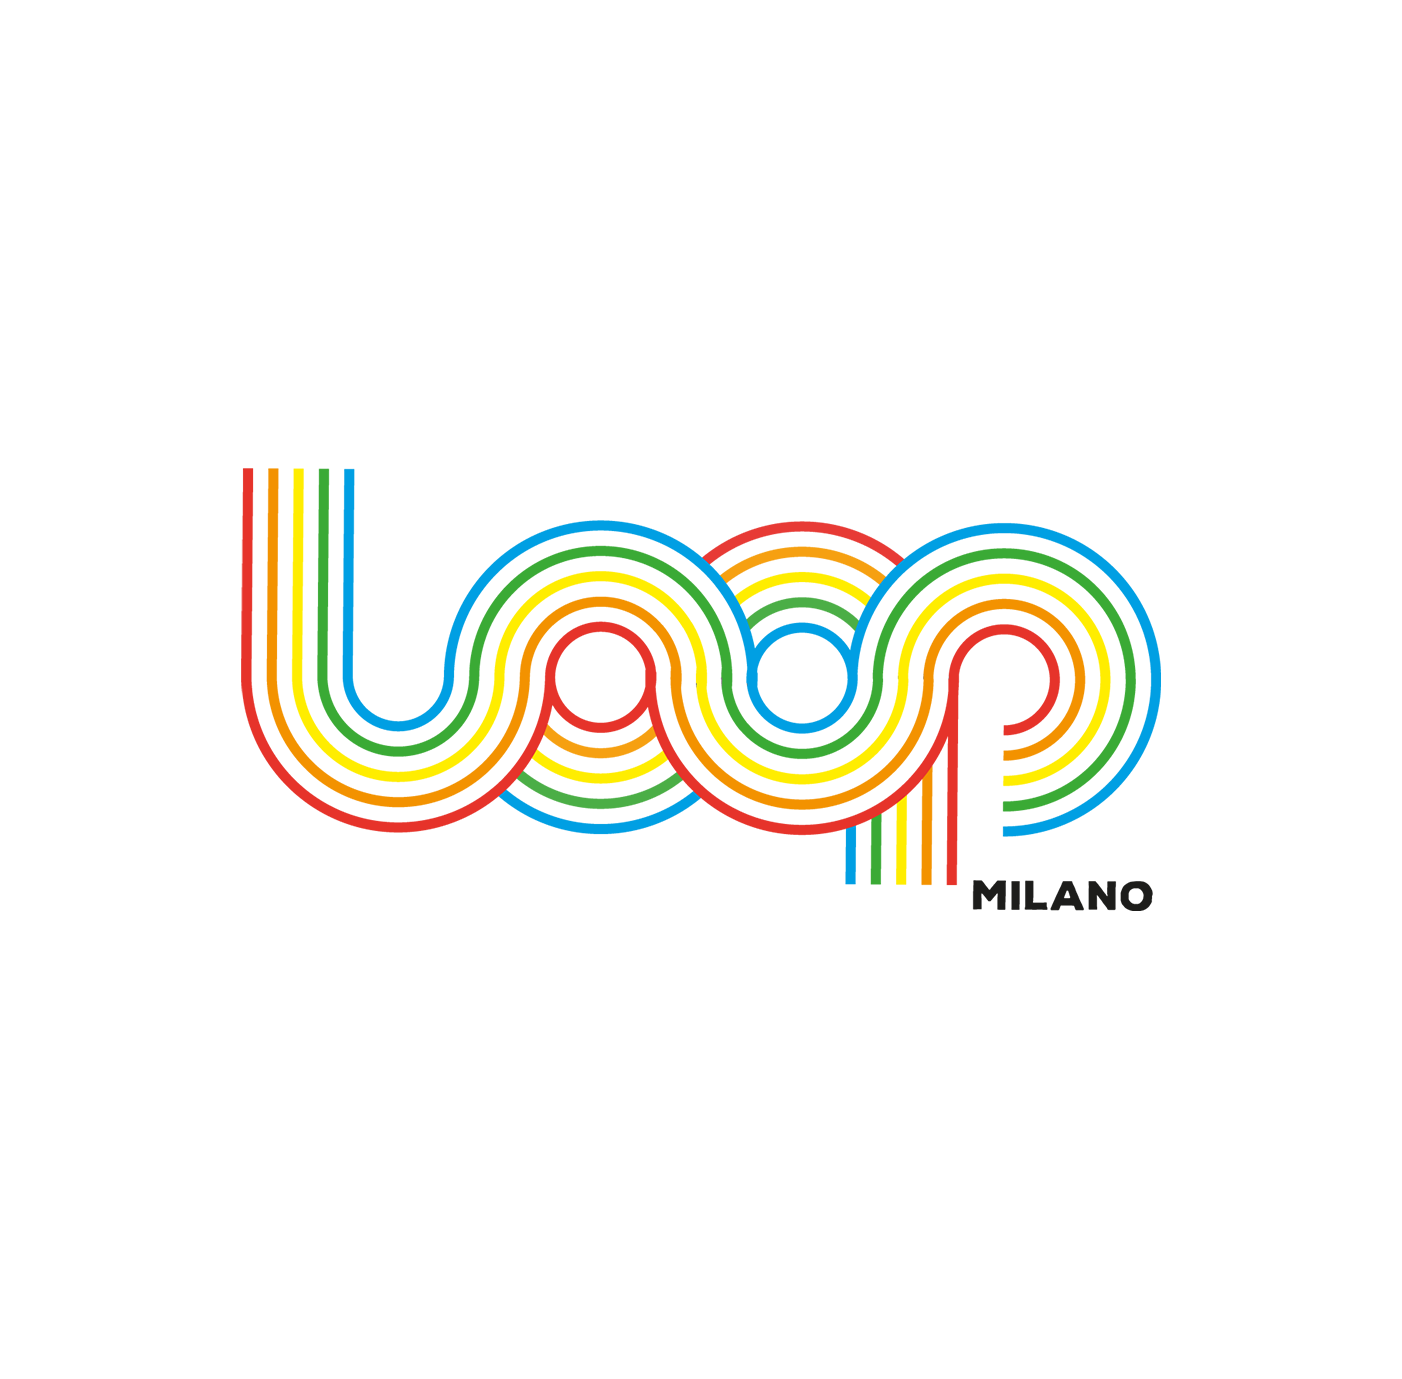 loop